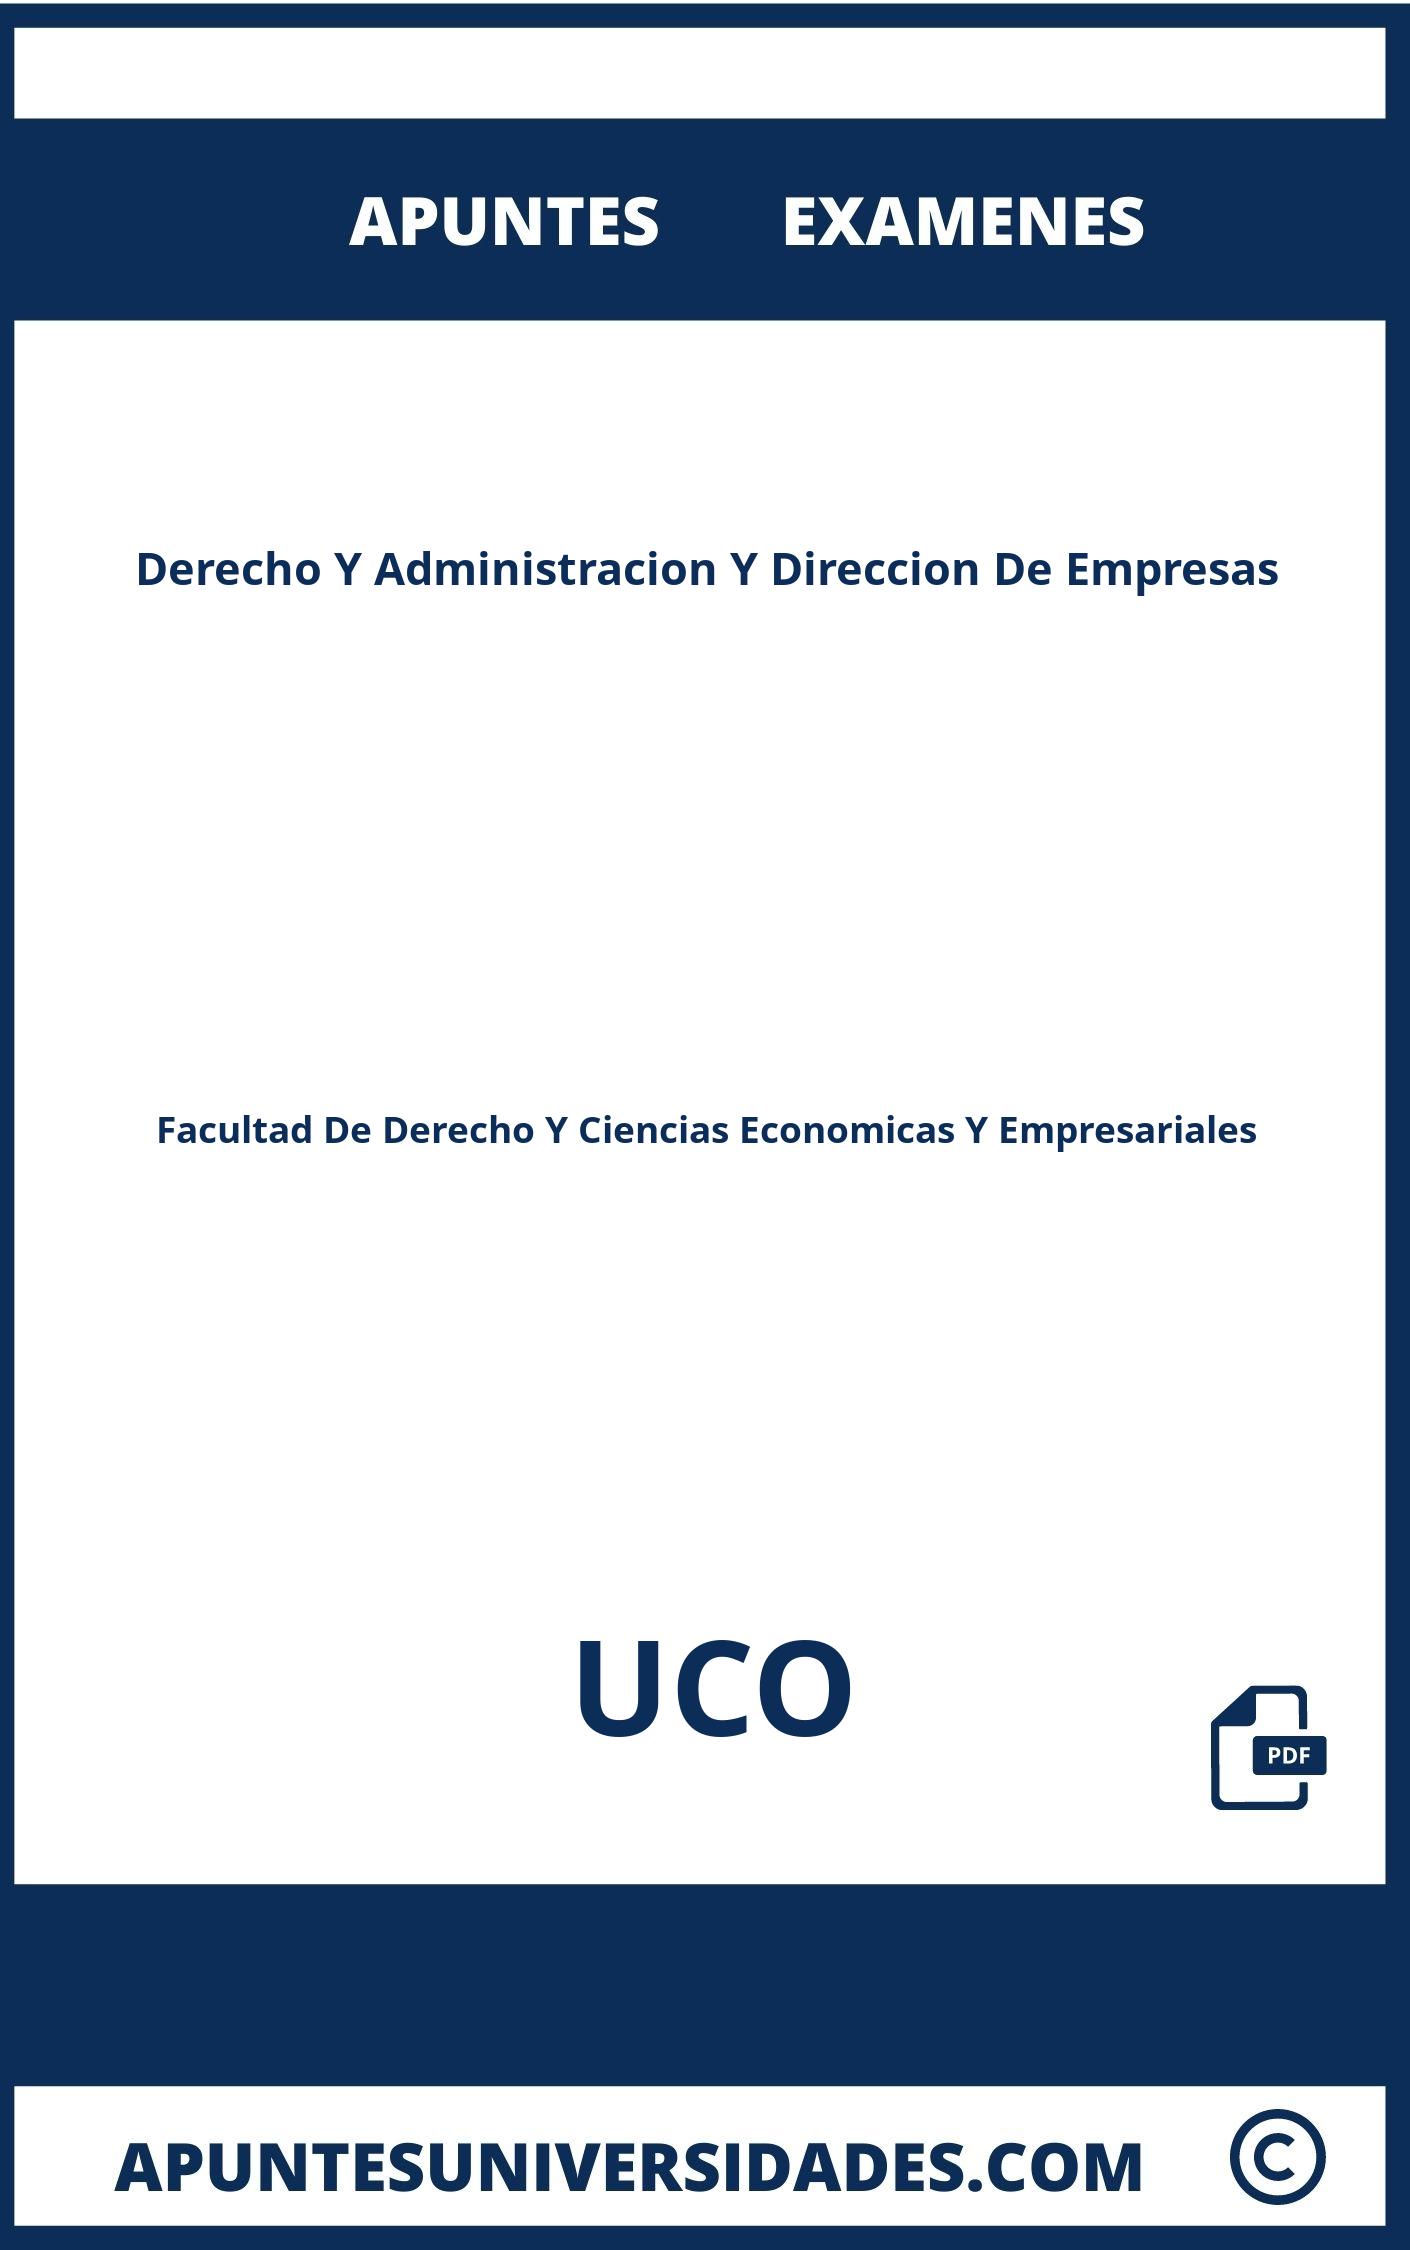 Apuntes y Examenes Derecho Y Administracion Y Direccion De Empresas UCO